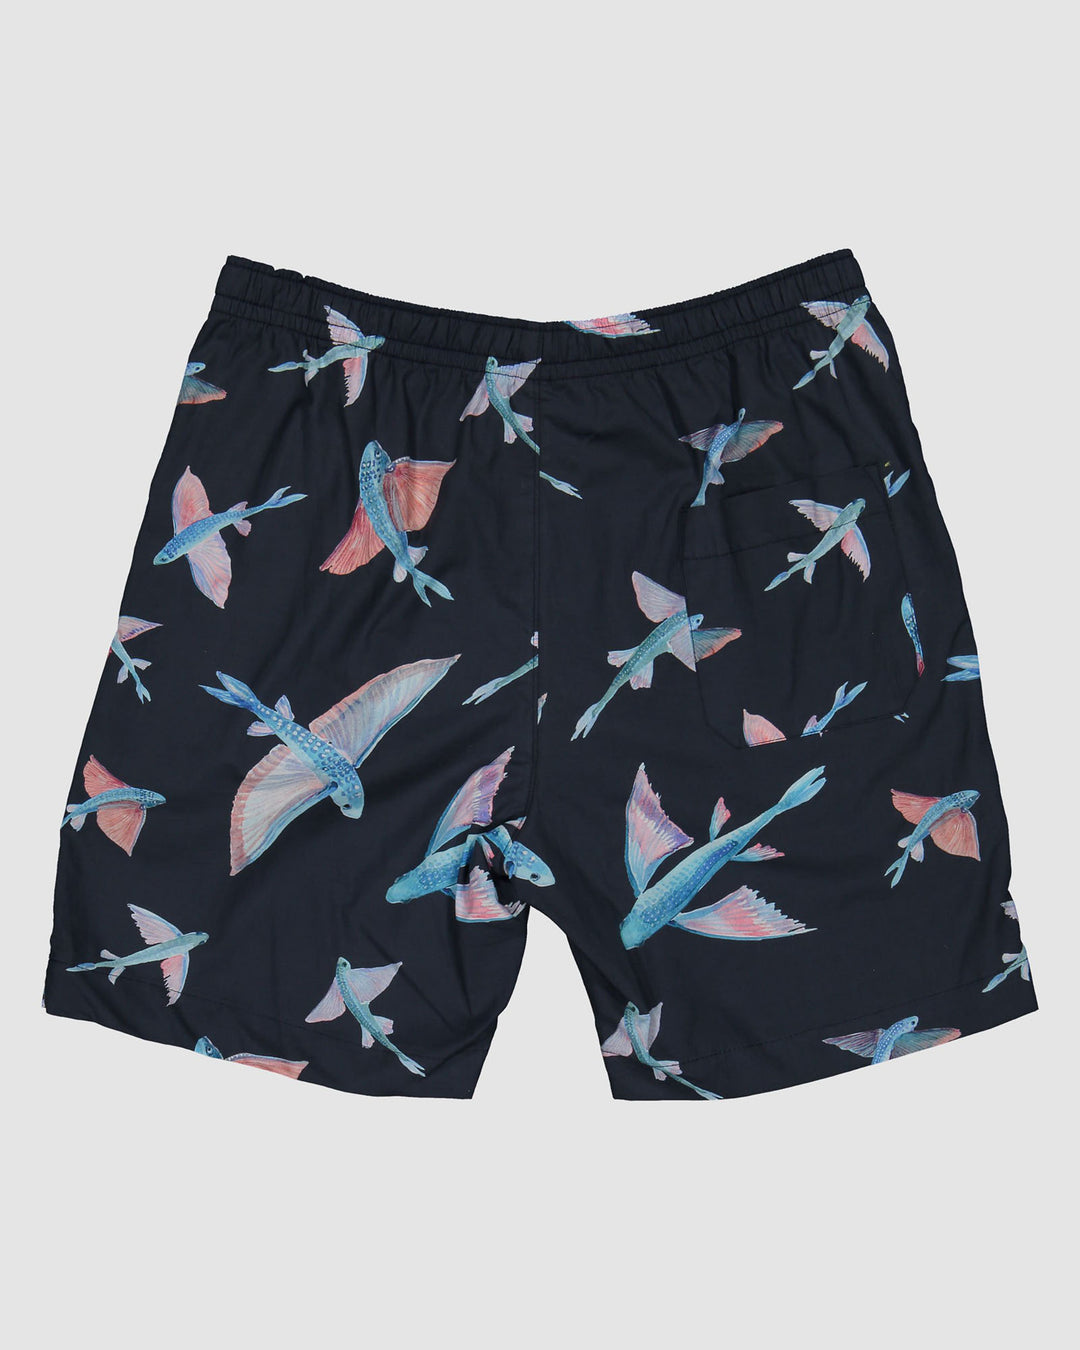 Mens Lounge Shorts Flying Fish Navy Back - Woodstock Laundry